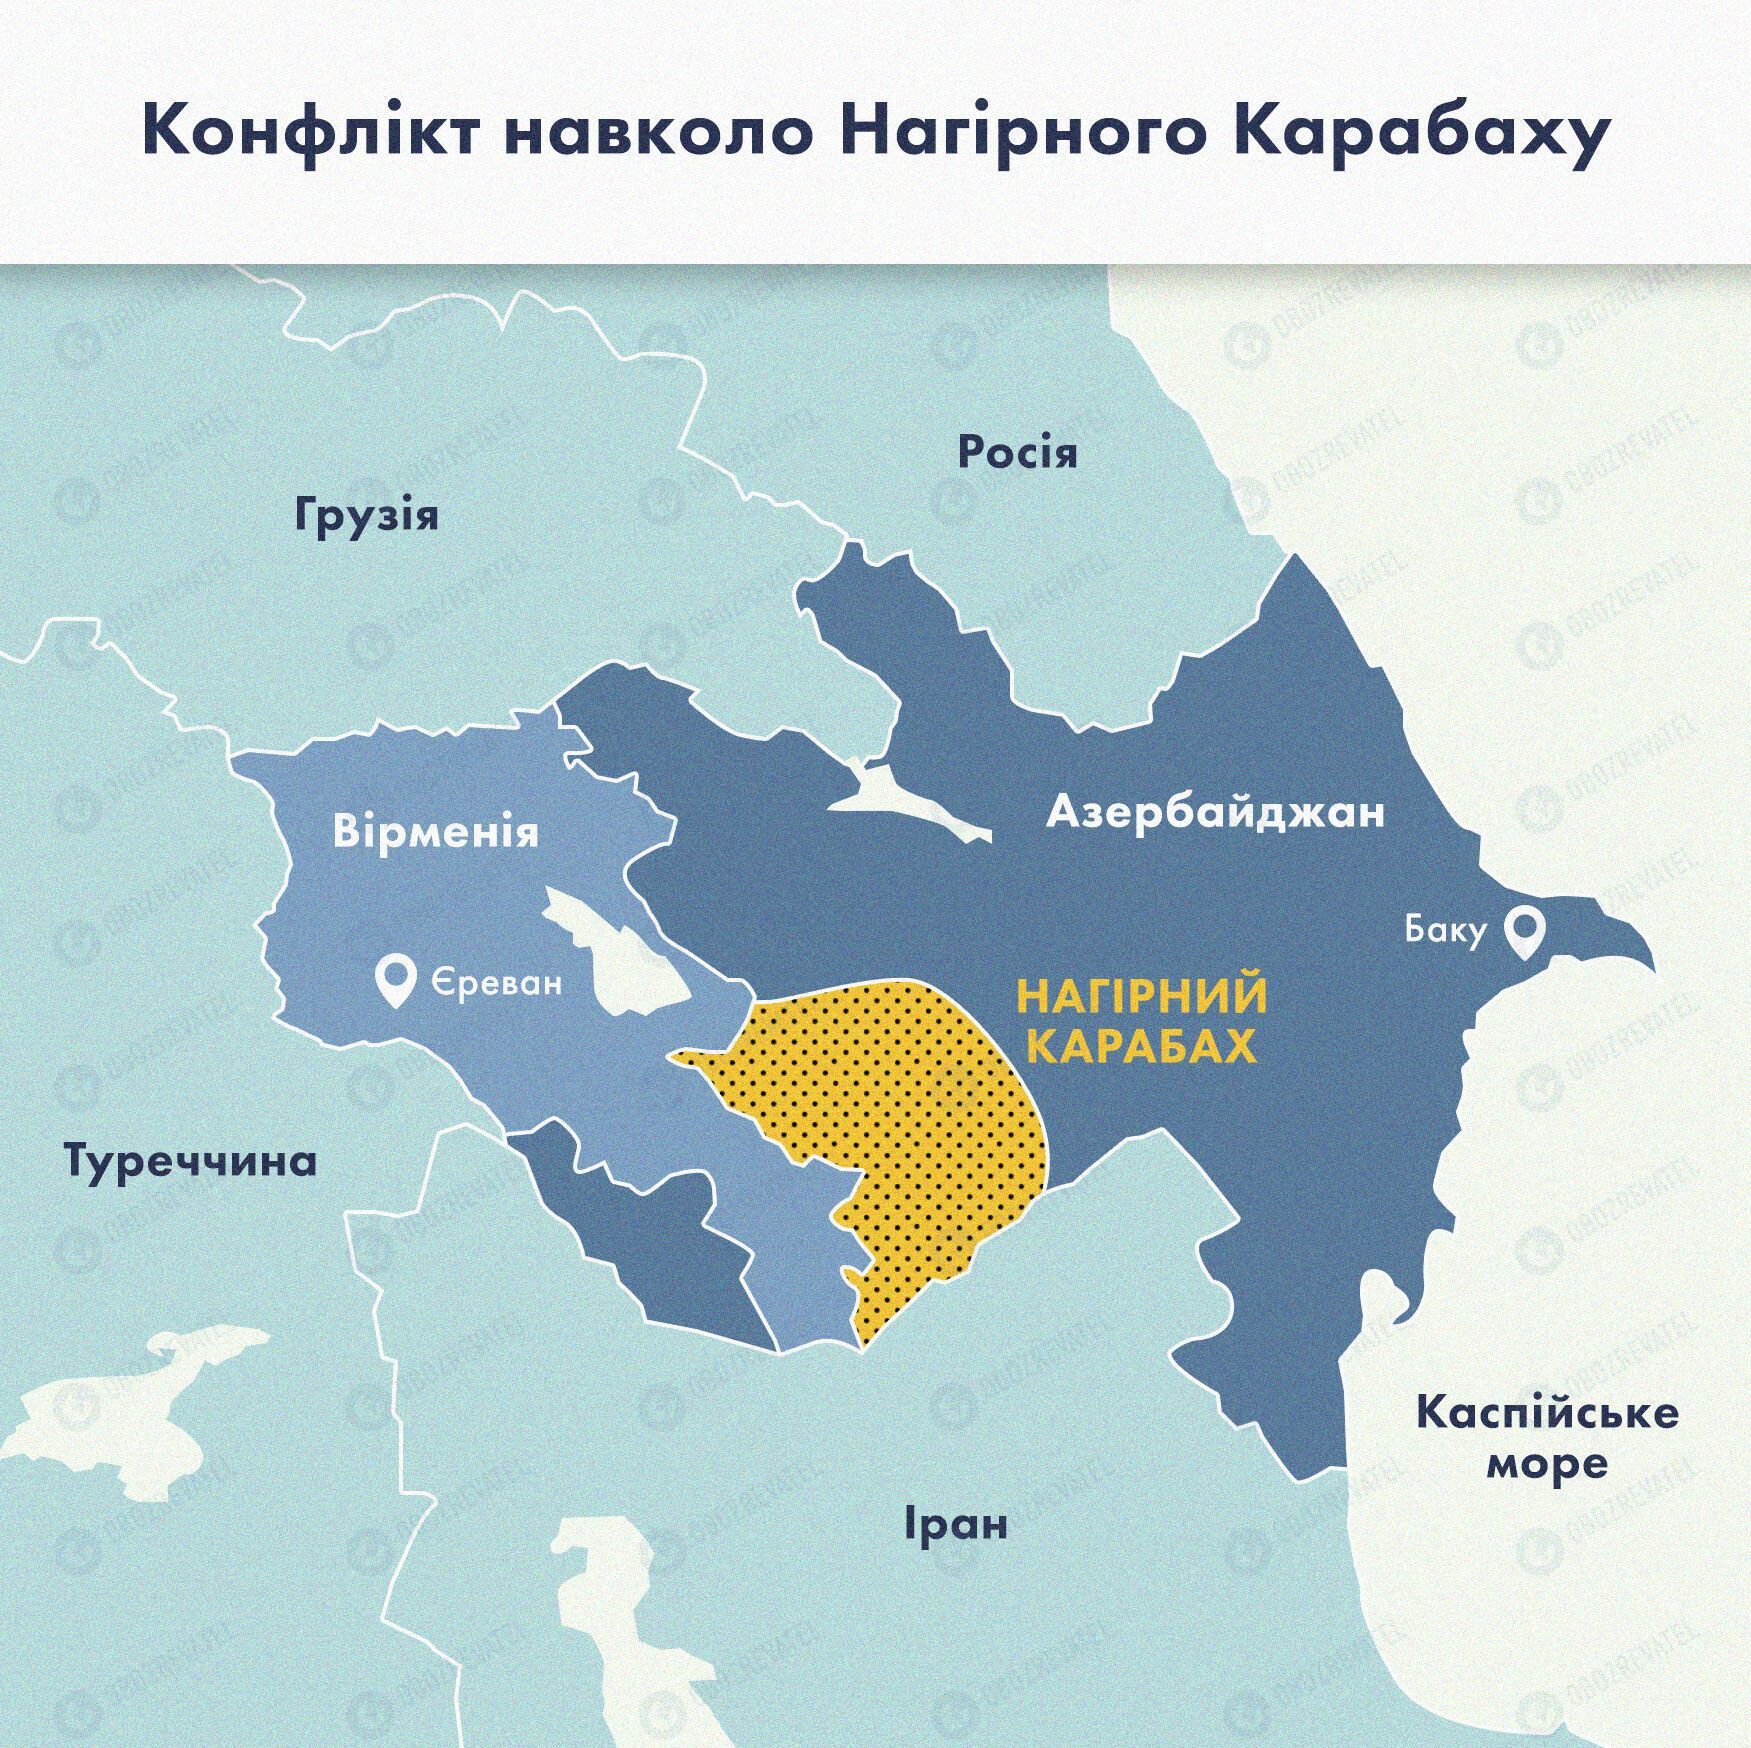 Карта конфликта вокруг Нагорного Карабаха.